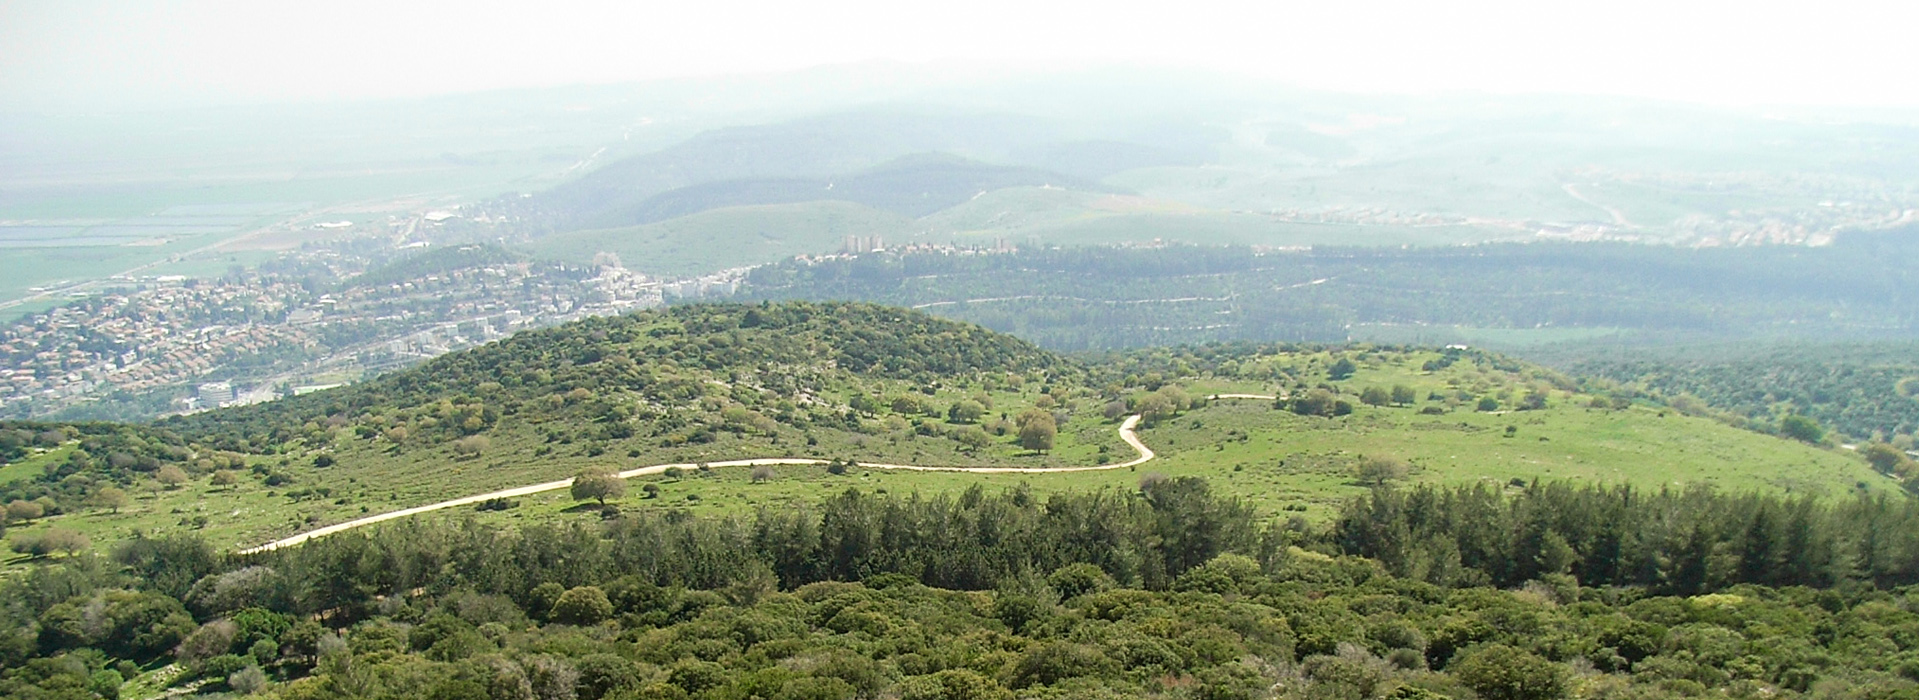 Blick auf eine halboffene Landschaft auf einer Bergkuppe.  Ein Weg führt über die Fläche. Im Hintergrund sieht man ähnliche Hügel.